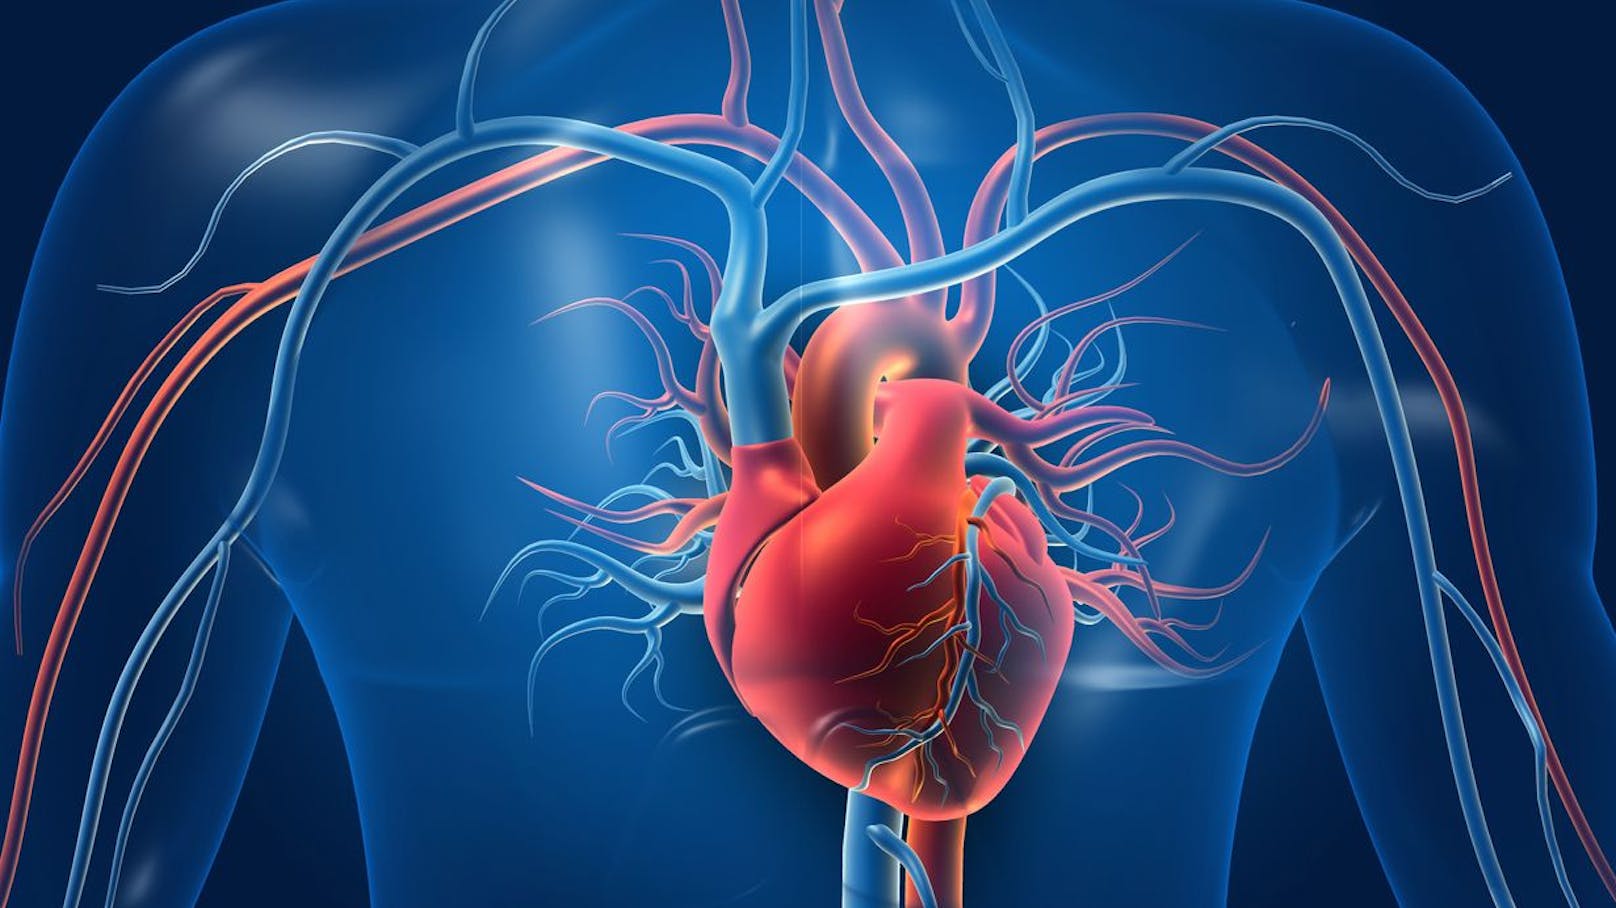 Mediziner definieren neues Organ im menschlichen Körper